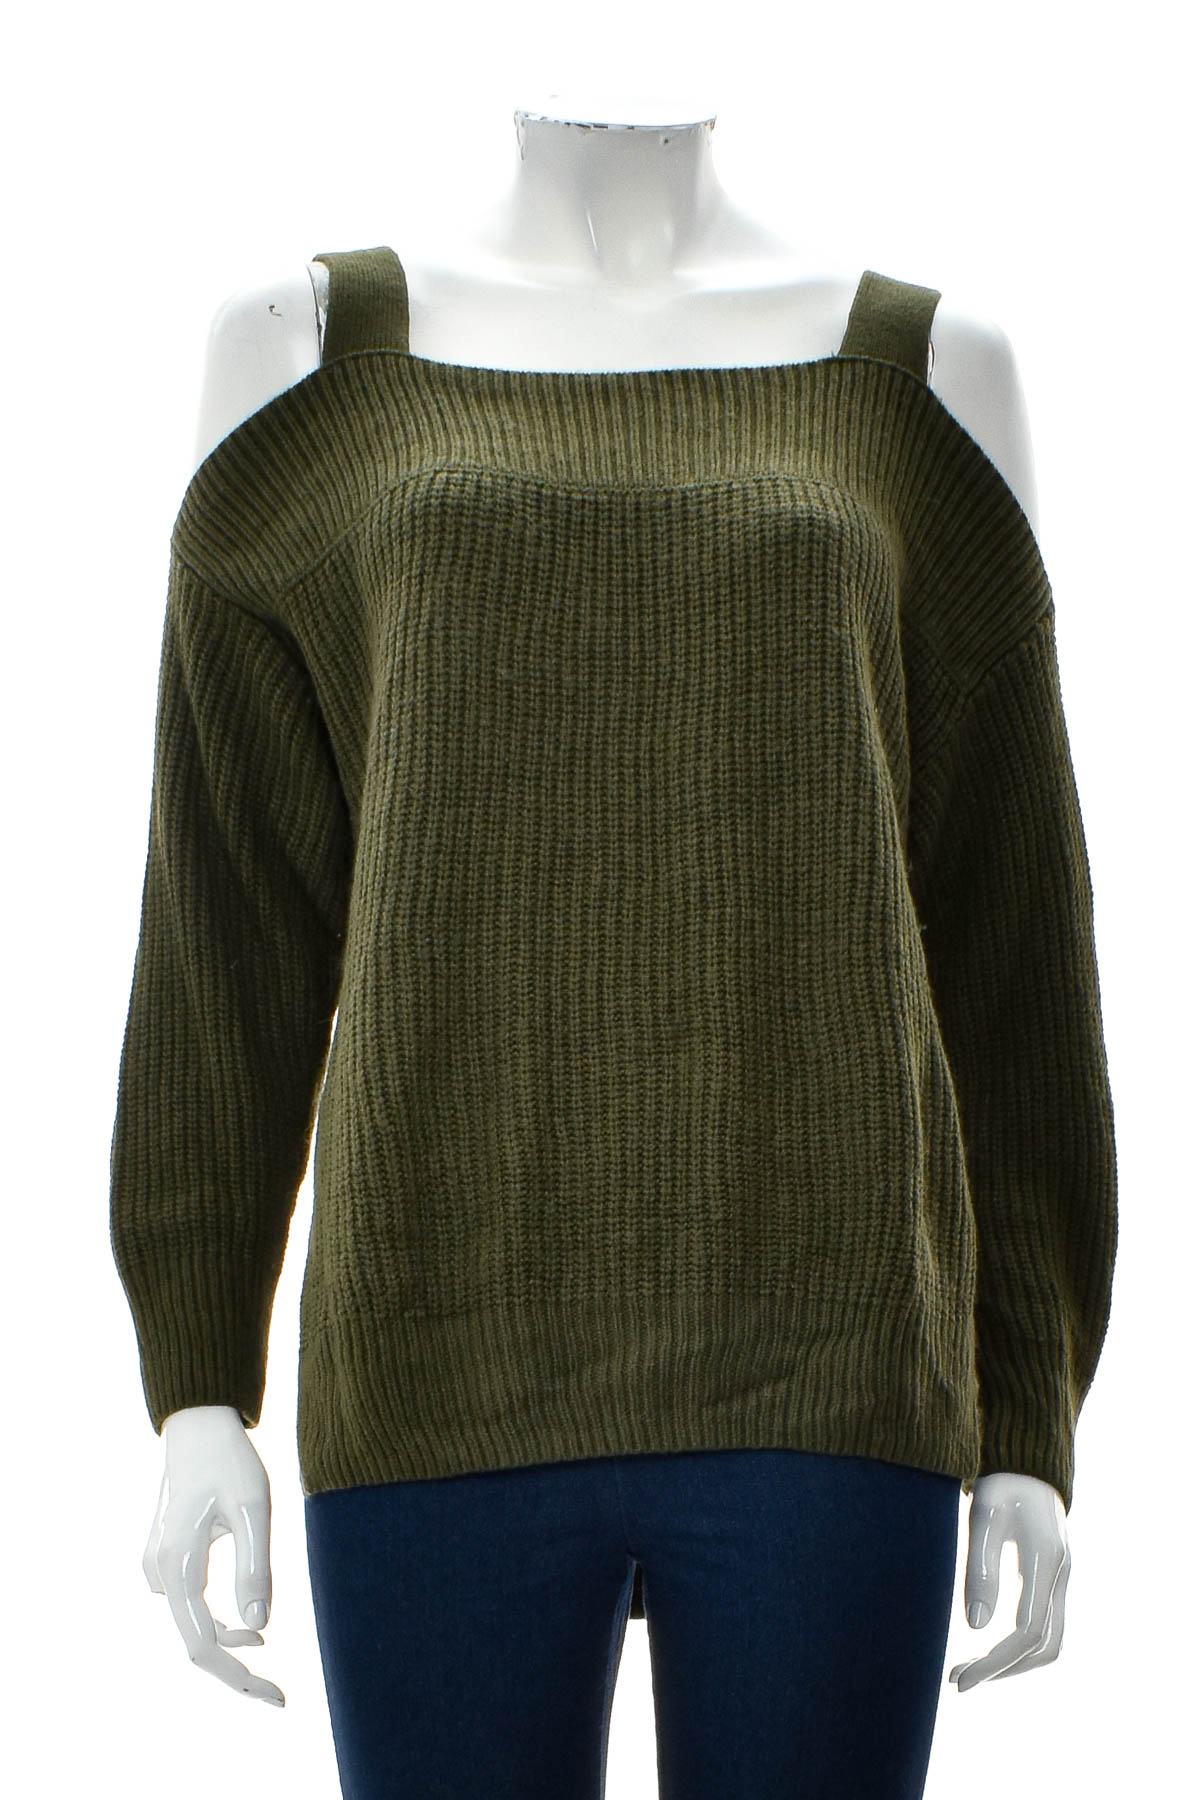 Women's sweater - Soho New York - 0